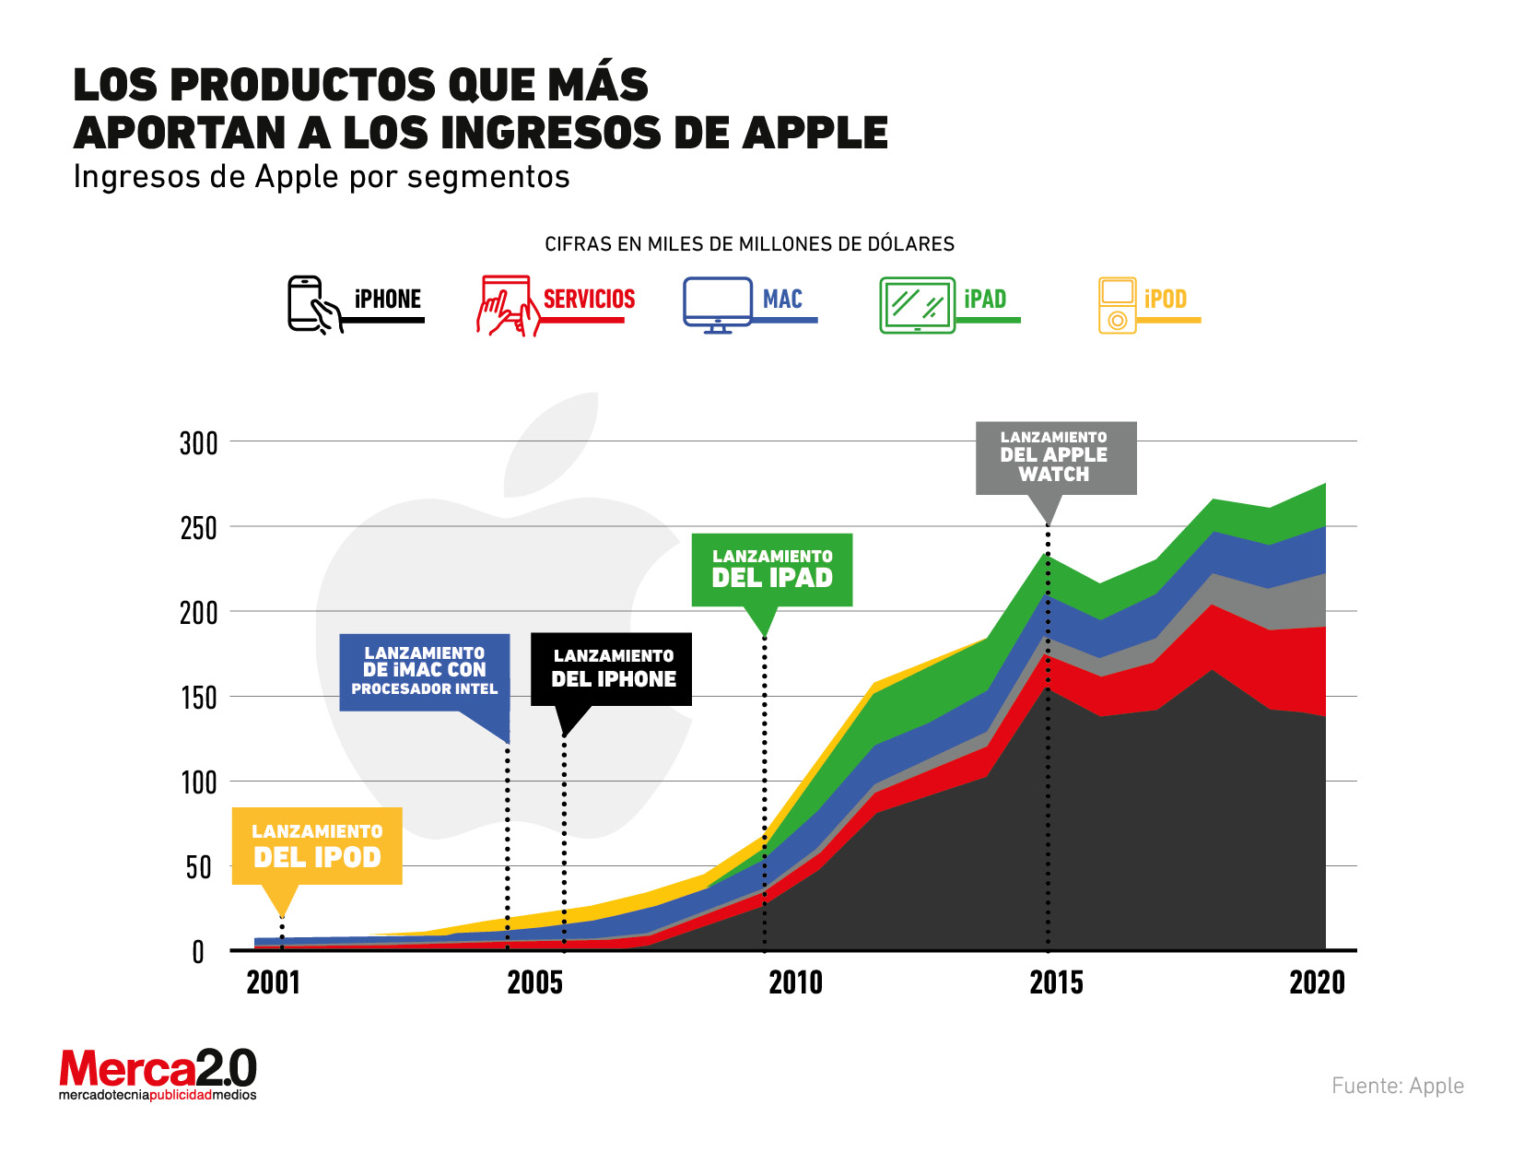 Desarrolladores de Apple con las ganancias más altas registradas